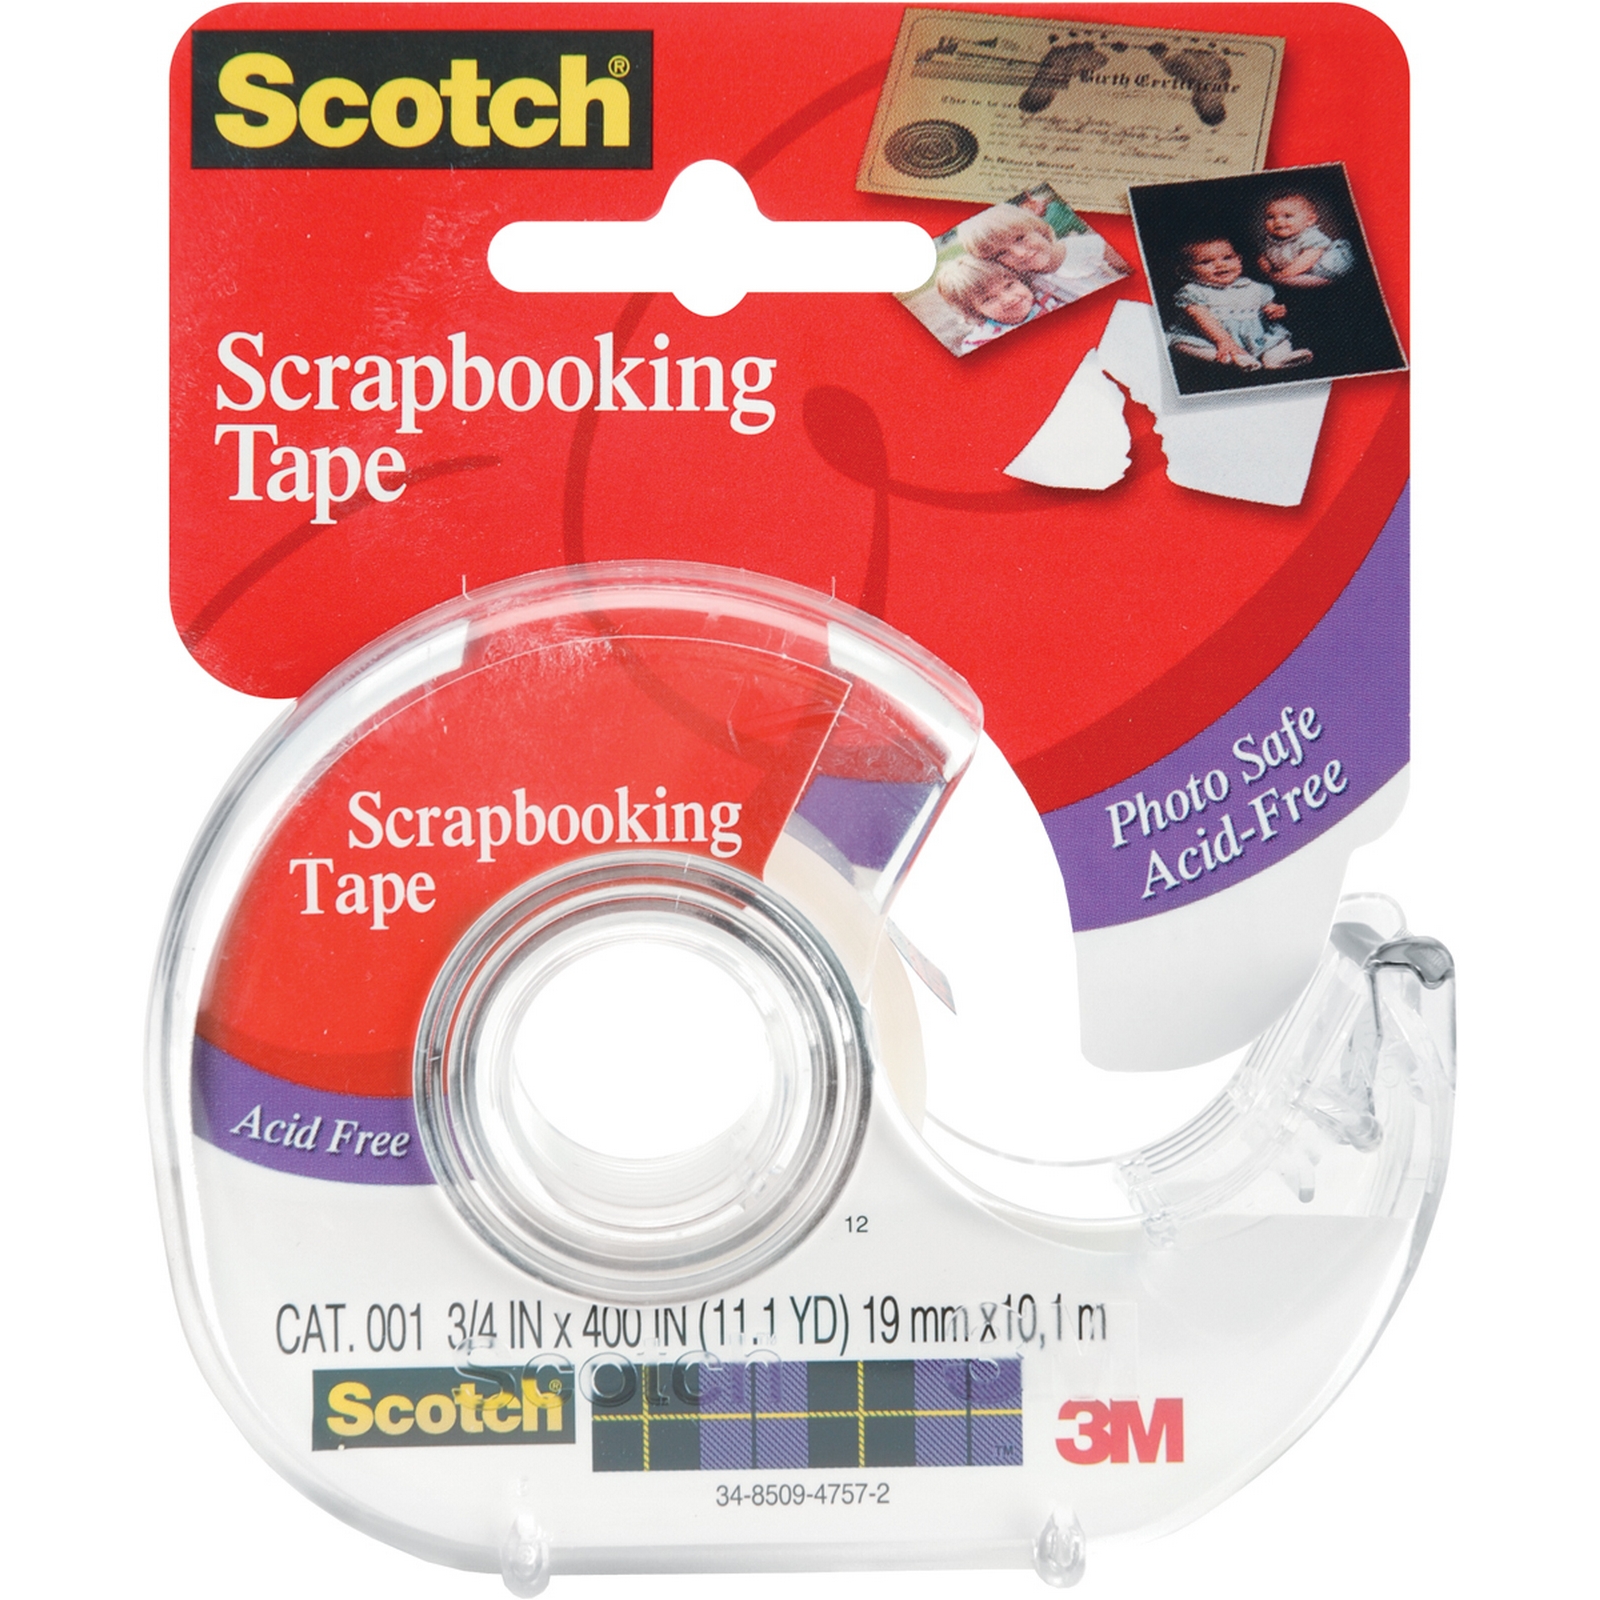 Scotch Scrapbooking Tape-.75"X400"